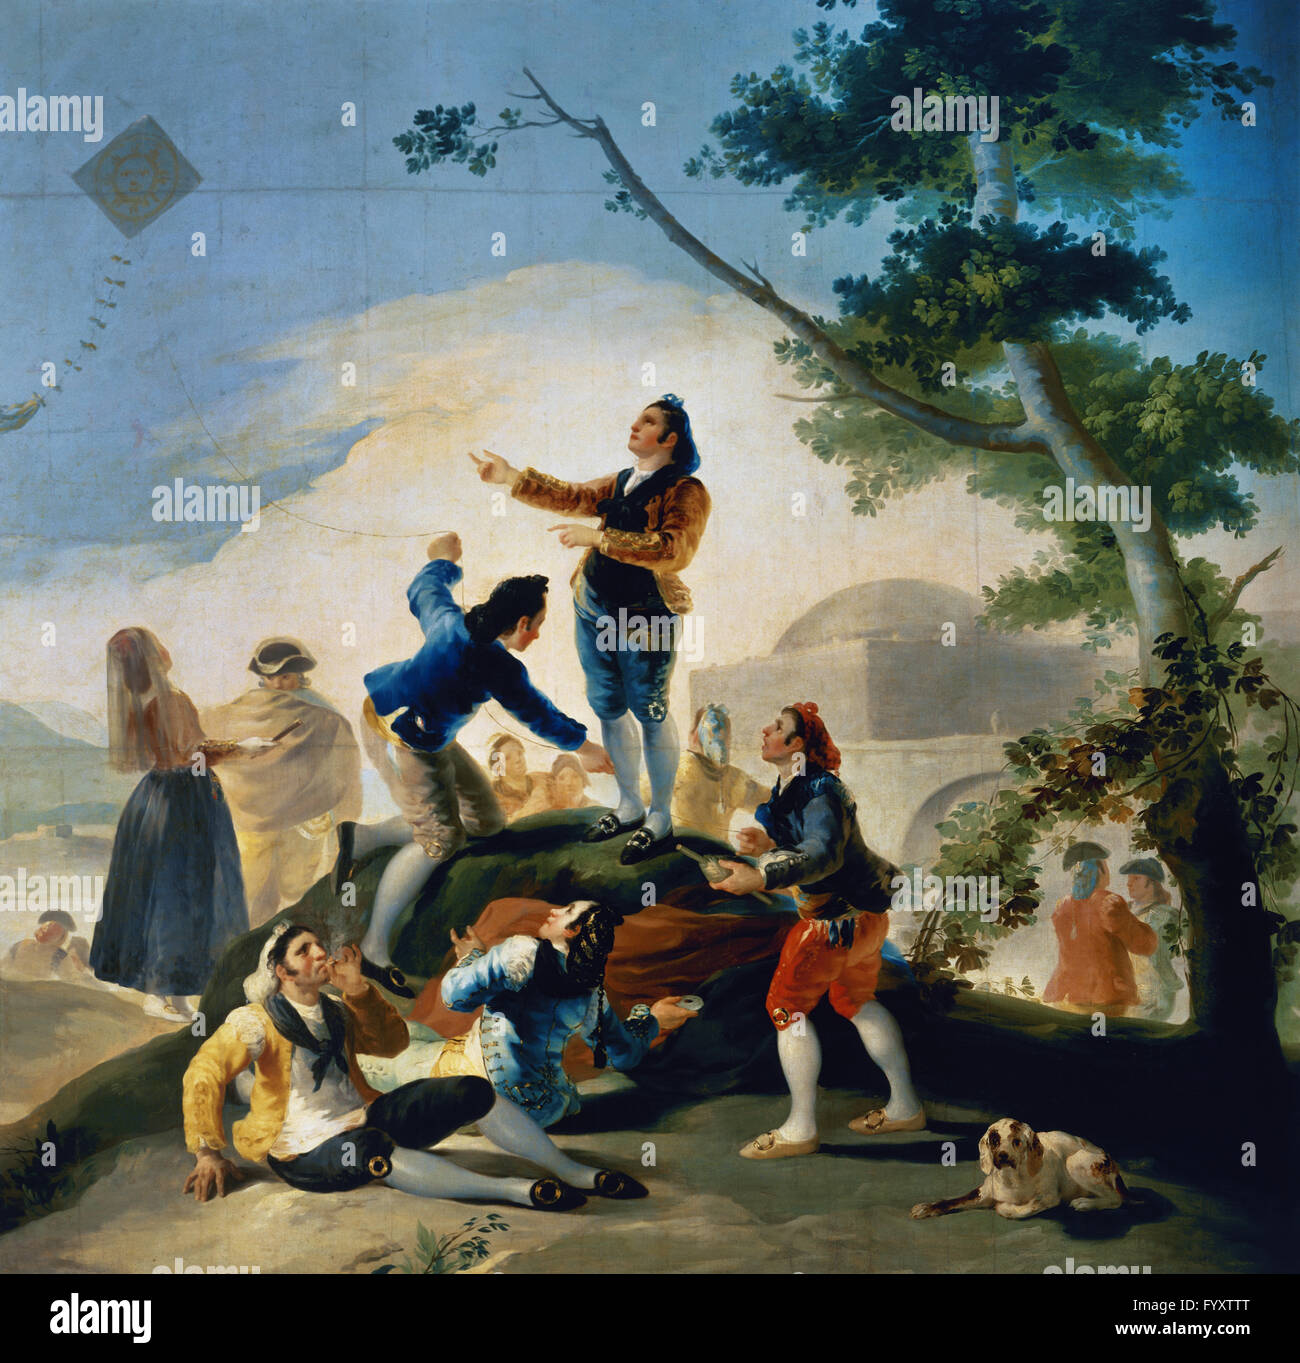 Francisco de Goya y Lucientes (1746-1828). Peintre espagnol. Le Cerf-volant, 1777-1778. Musée du Prado. Madrid. L'Espagne. Banque D'Images